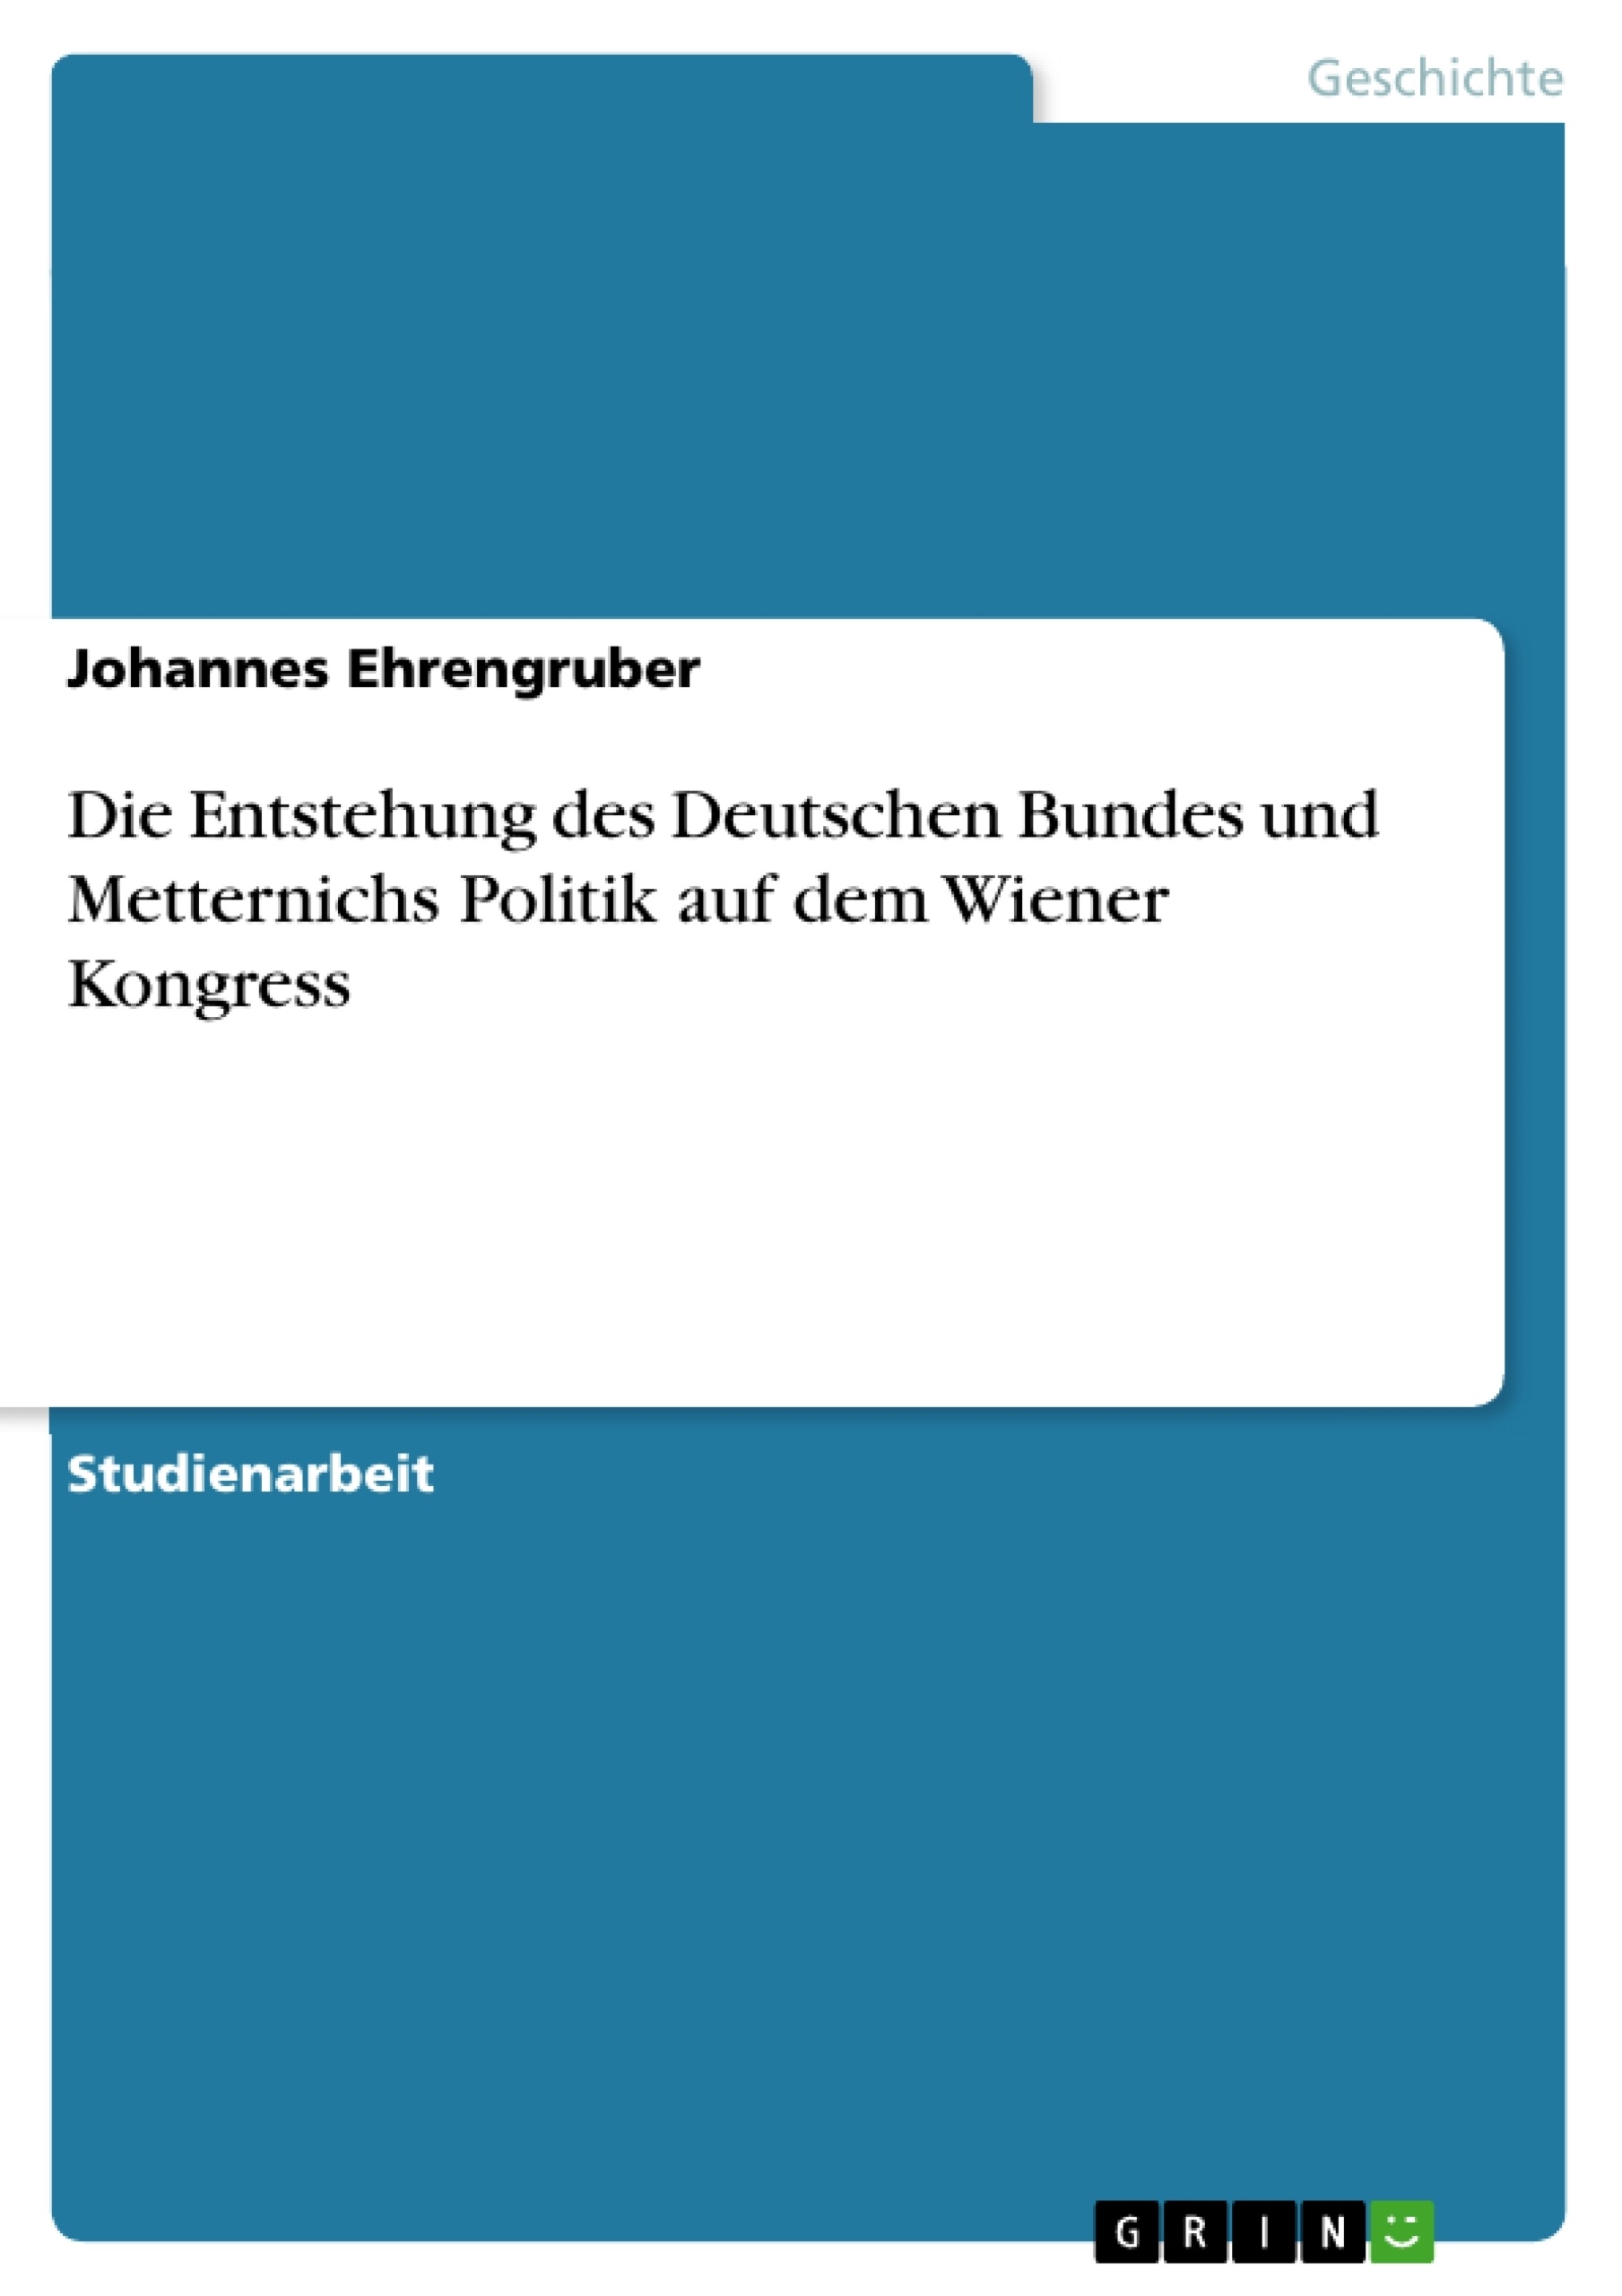 Titre: Die Entstehung des Deutschen Bundes und Metternichs Politik auf dem Wiener Kongress